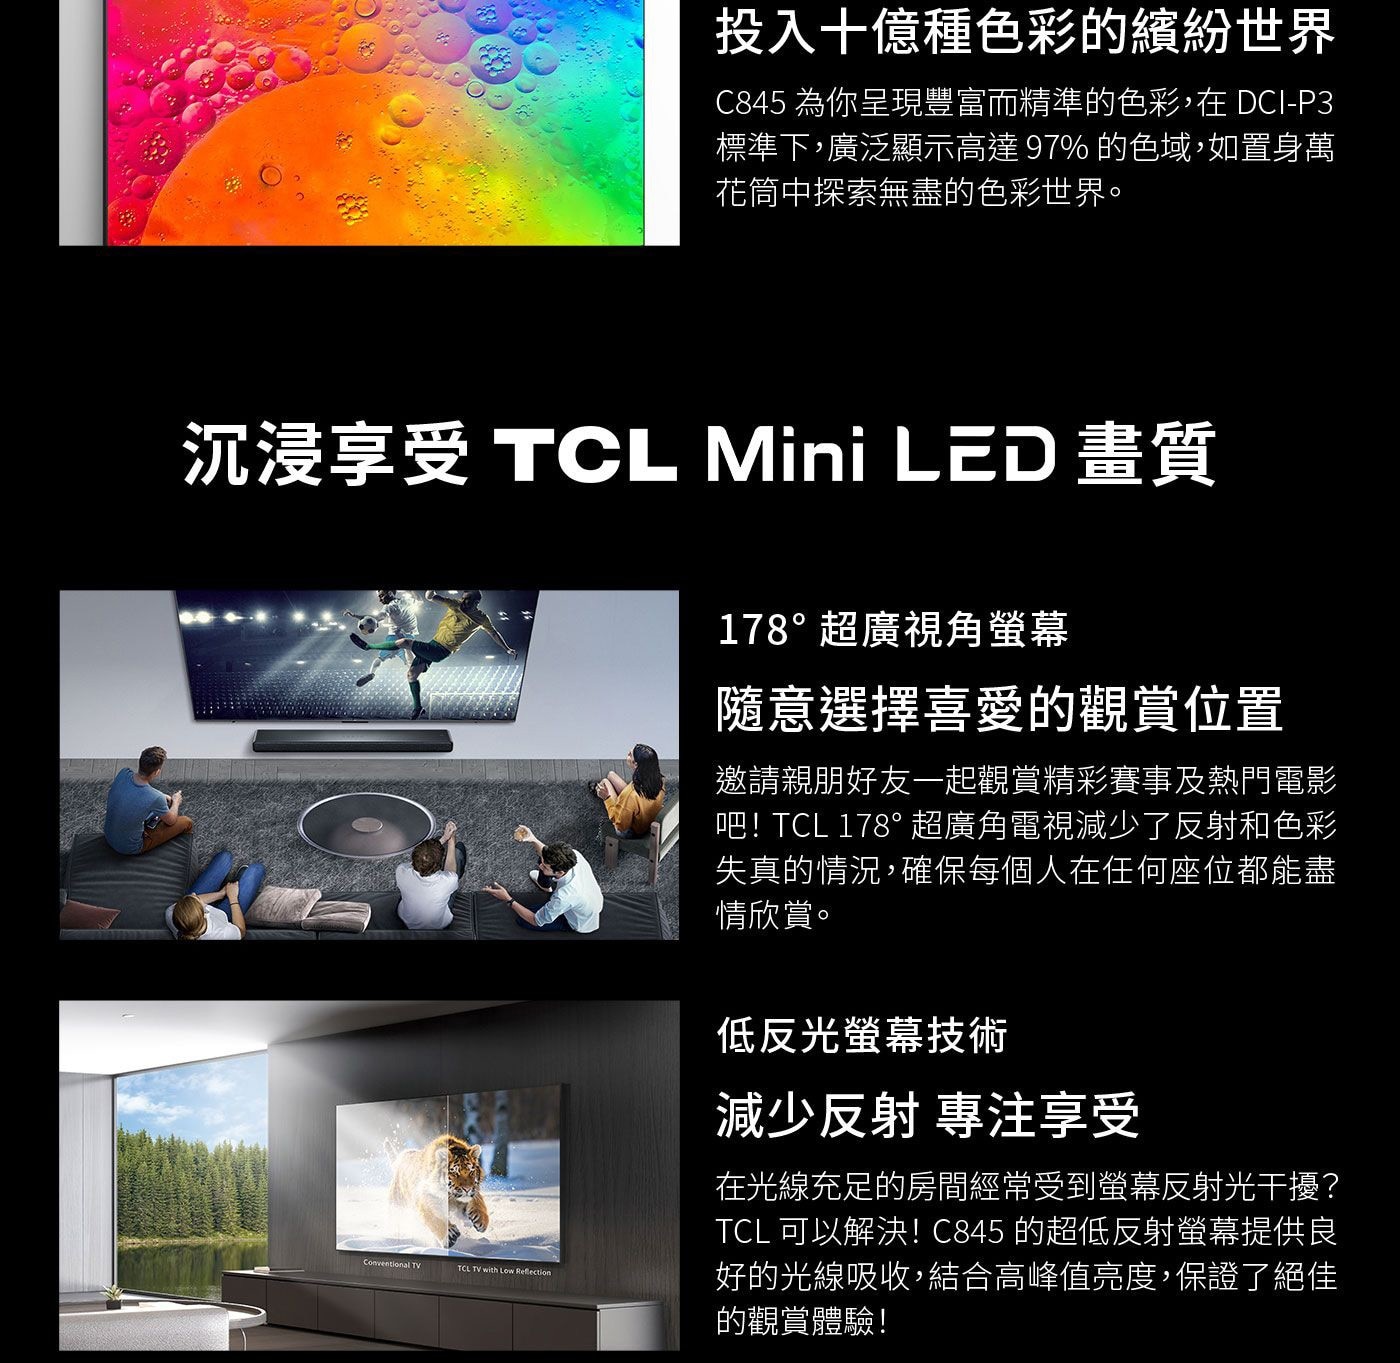 TCL 55吋 4K Mini LED QLED Google TV 量子智能連網液晶顯示器 55C845量子點技術投入十億色彩的繽紛世界隨意選擇喜愛的觀賞位置超廣角螢幕低反光螢幕技術